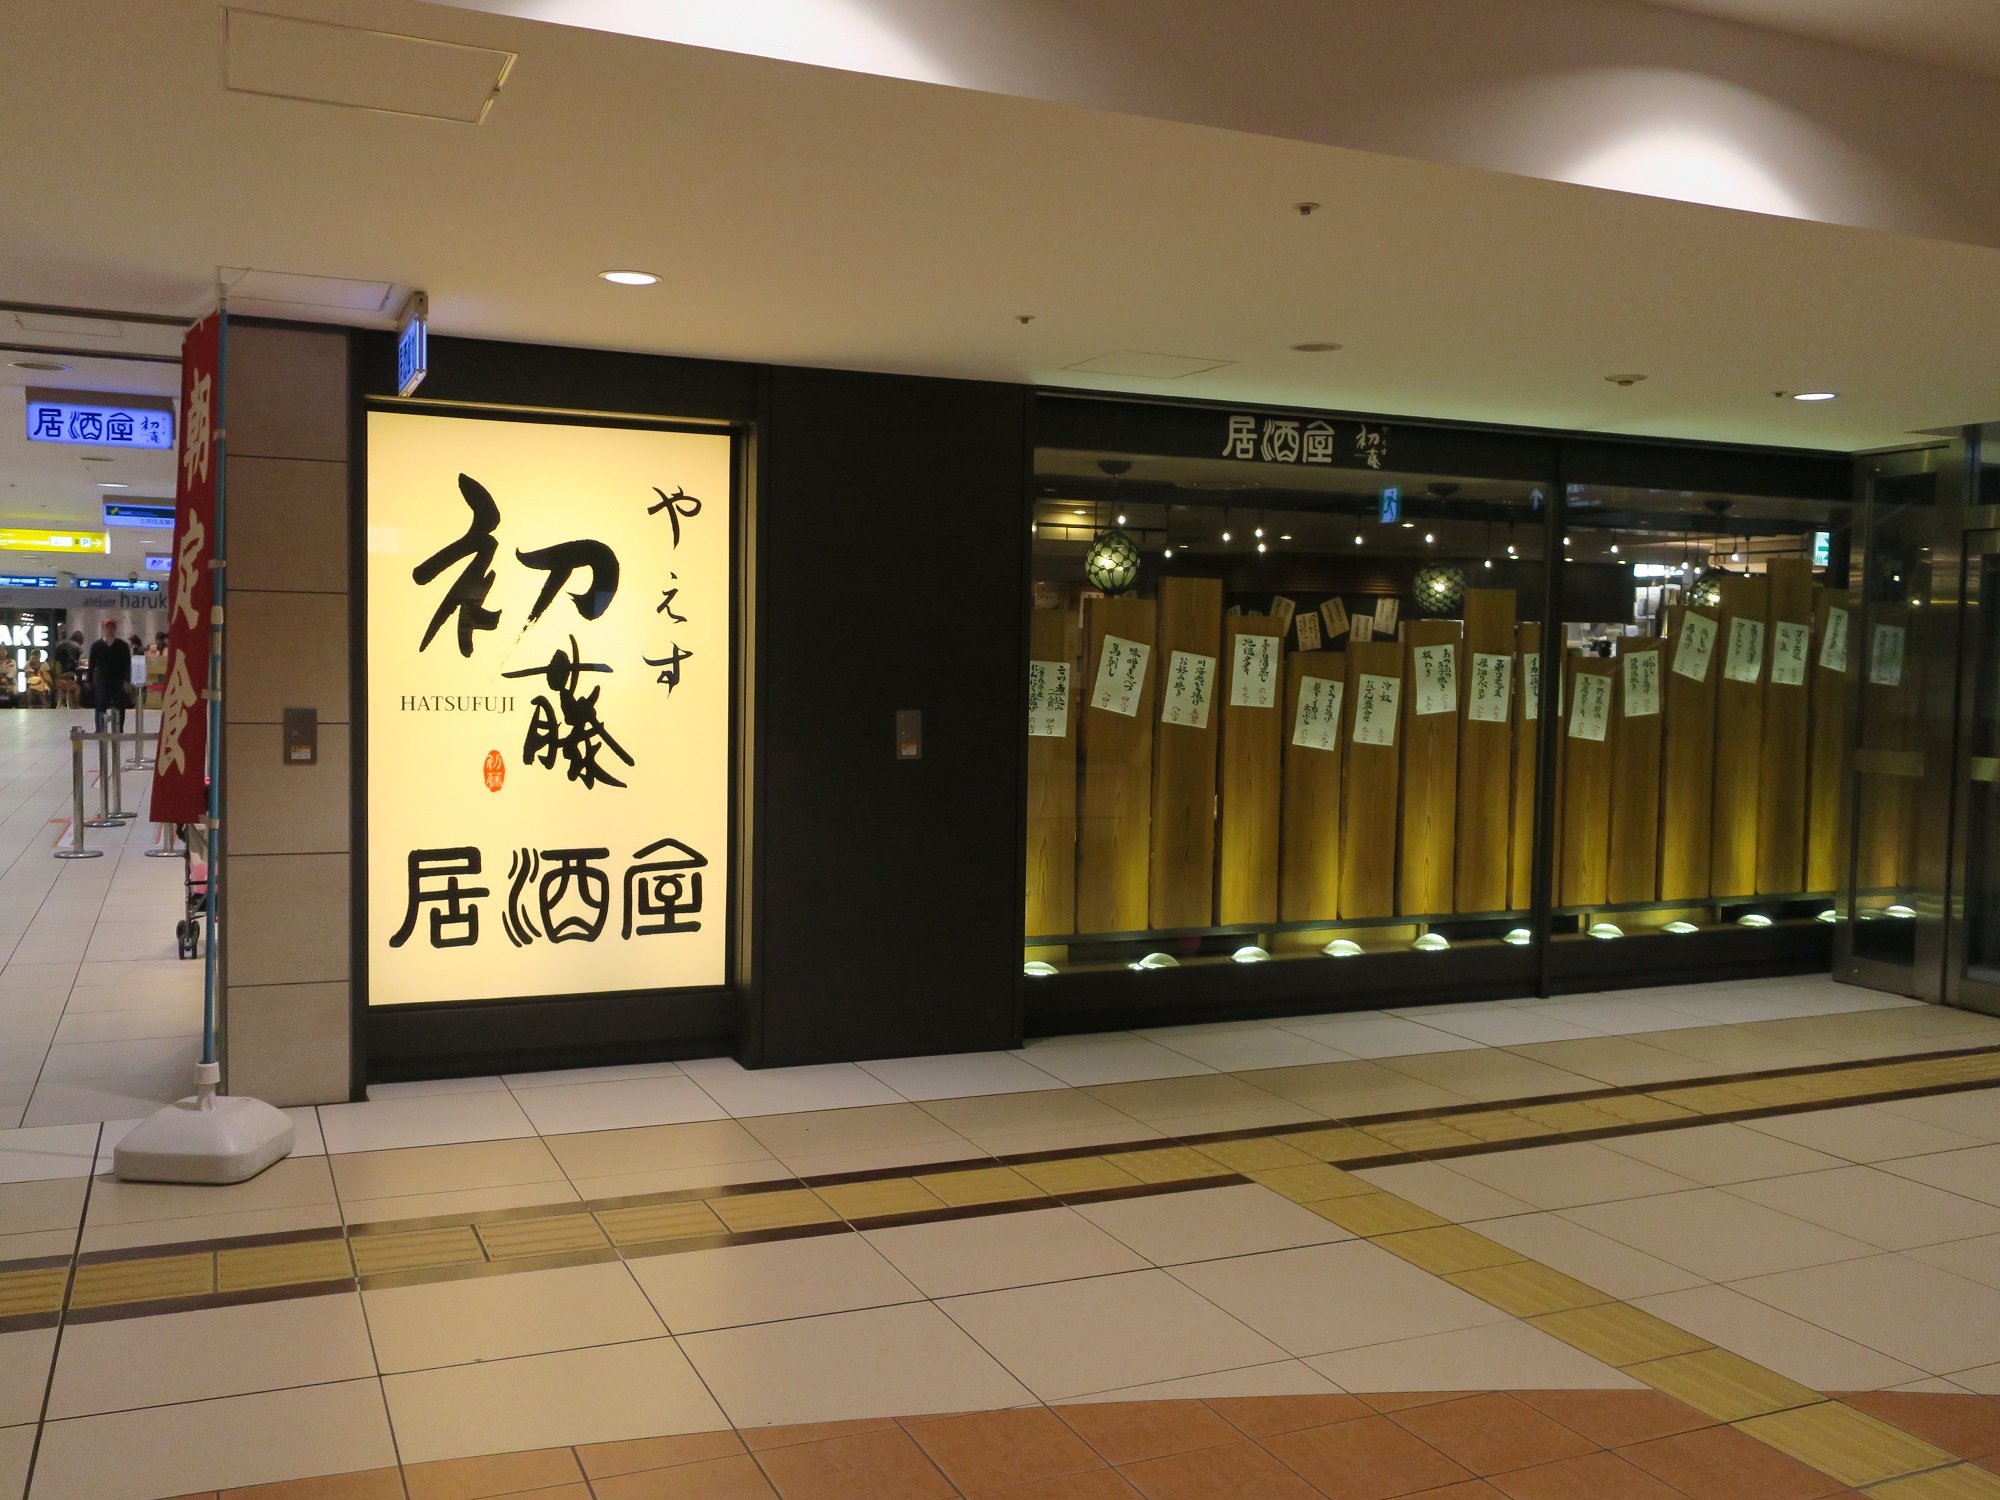 やえす初藤 店舗 東京駅八重洲地下街にあります